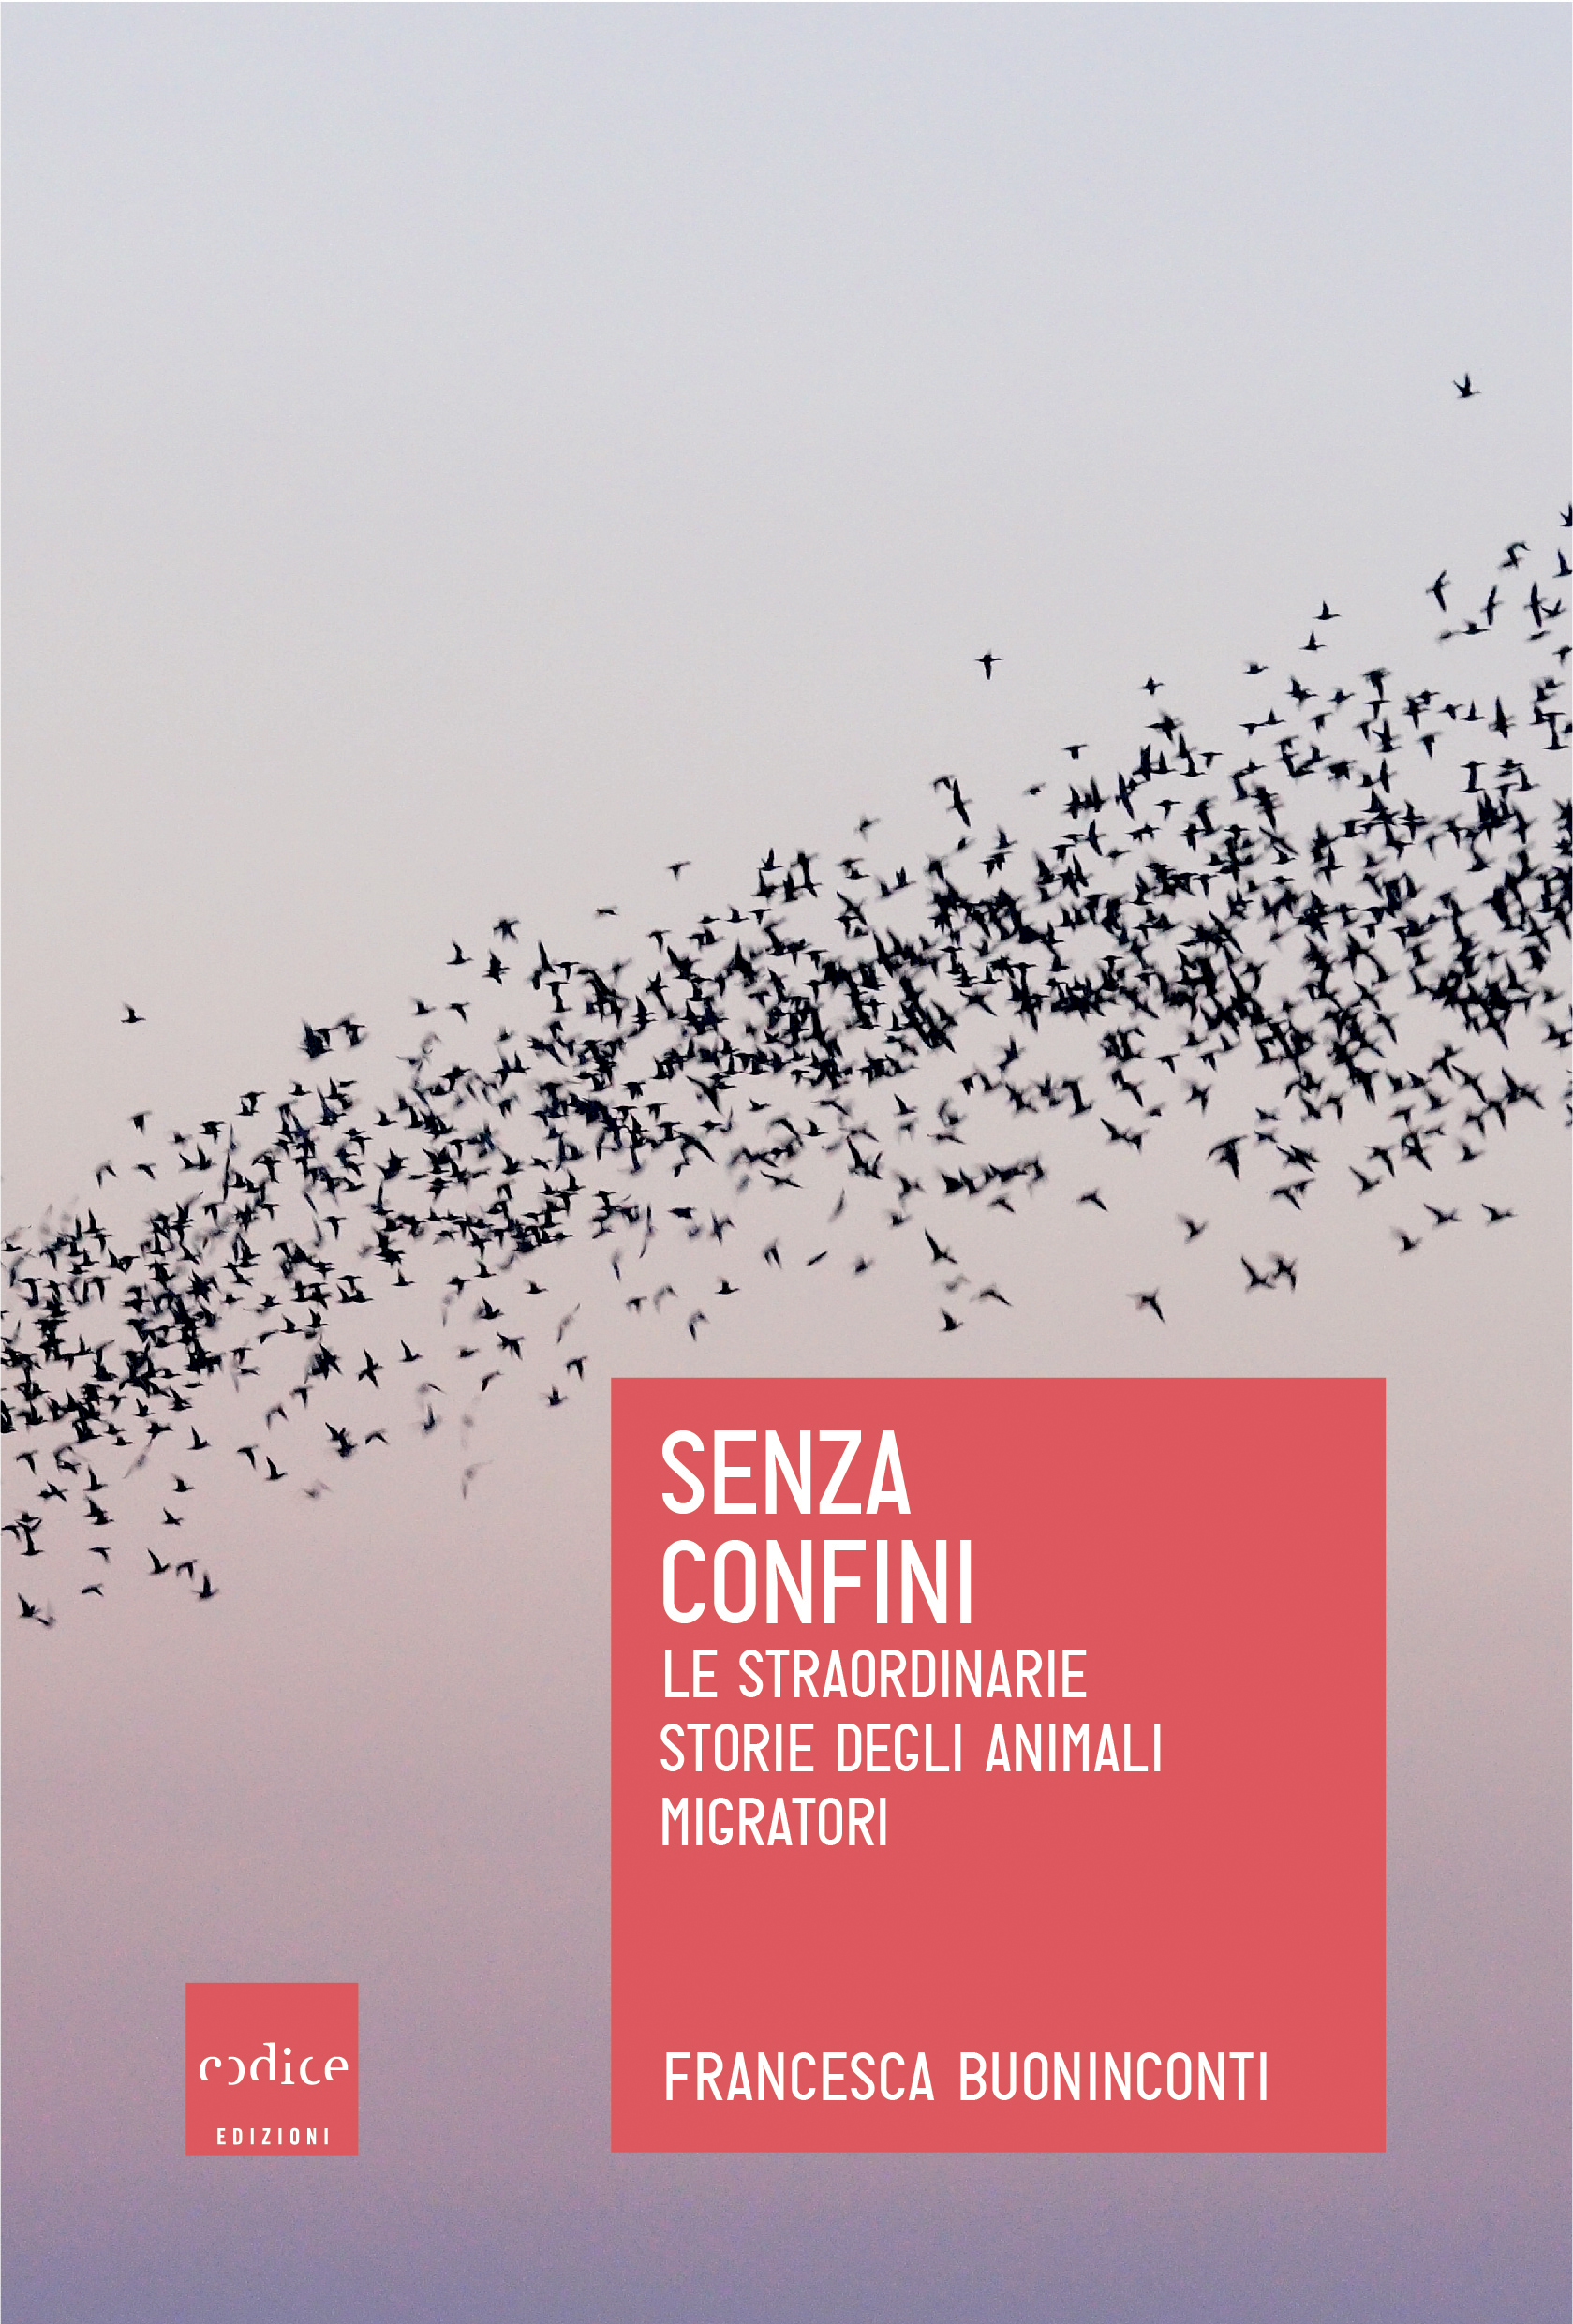 “Senza Confini” di Francesca Buoniconti, Codice Edizioni: Francesca Scotti per corriereitalianita.ch